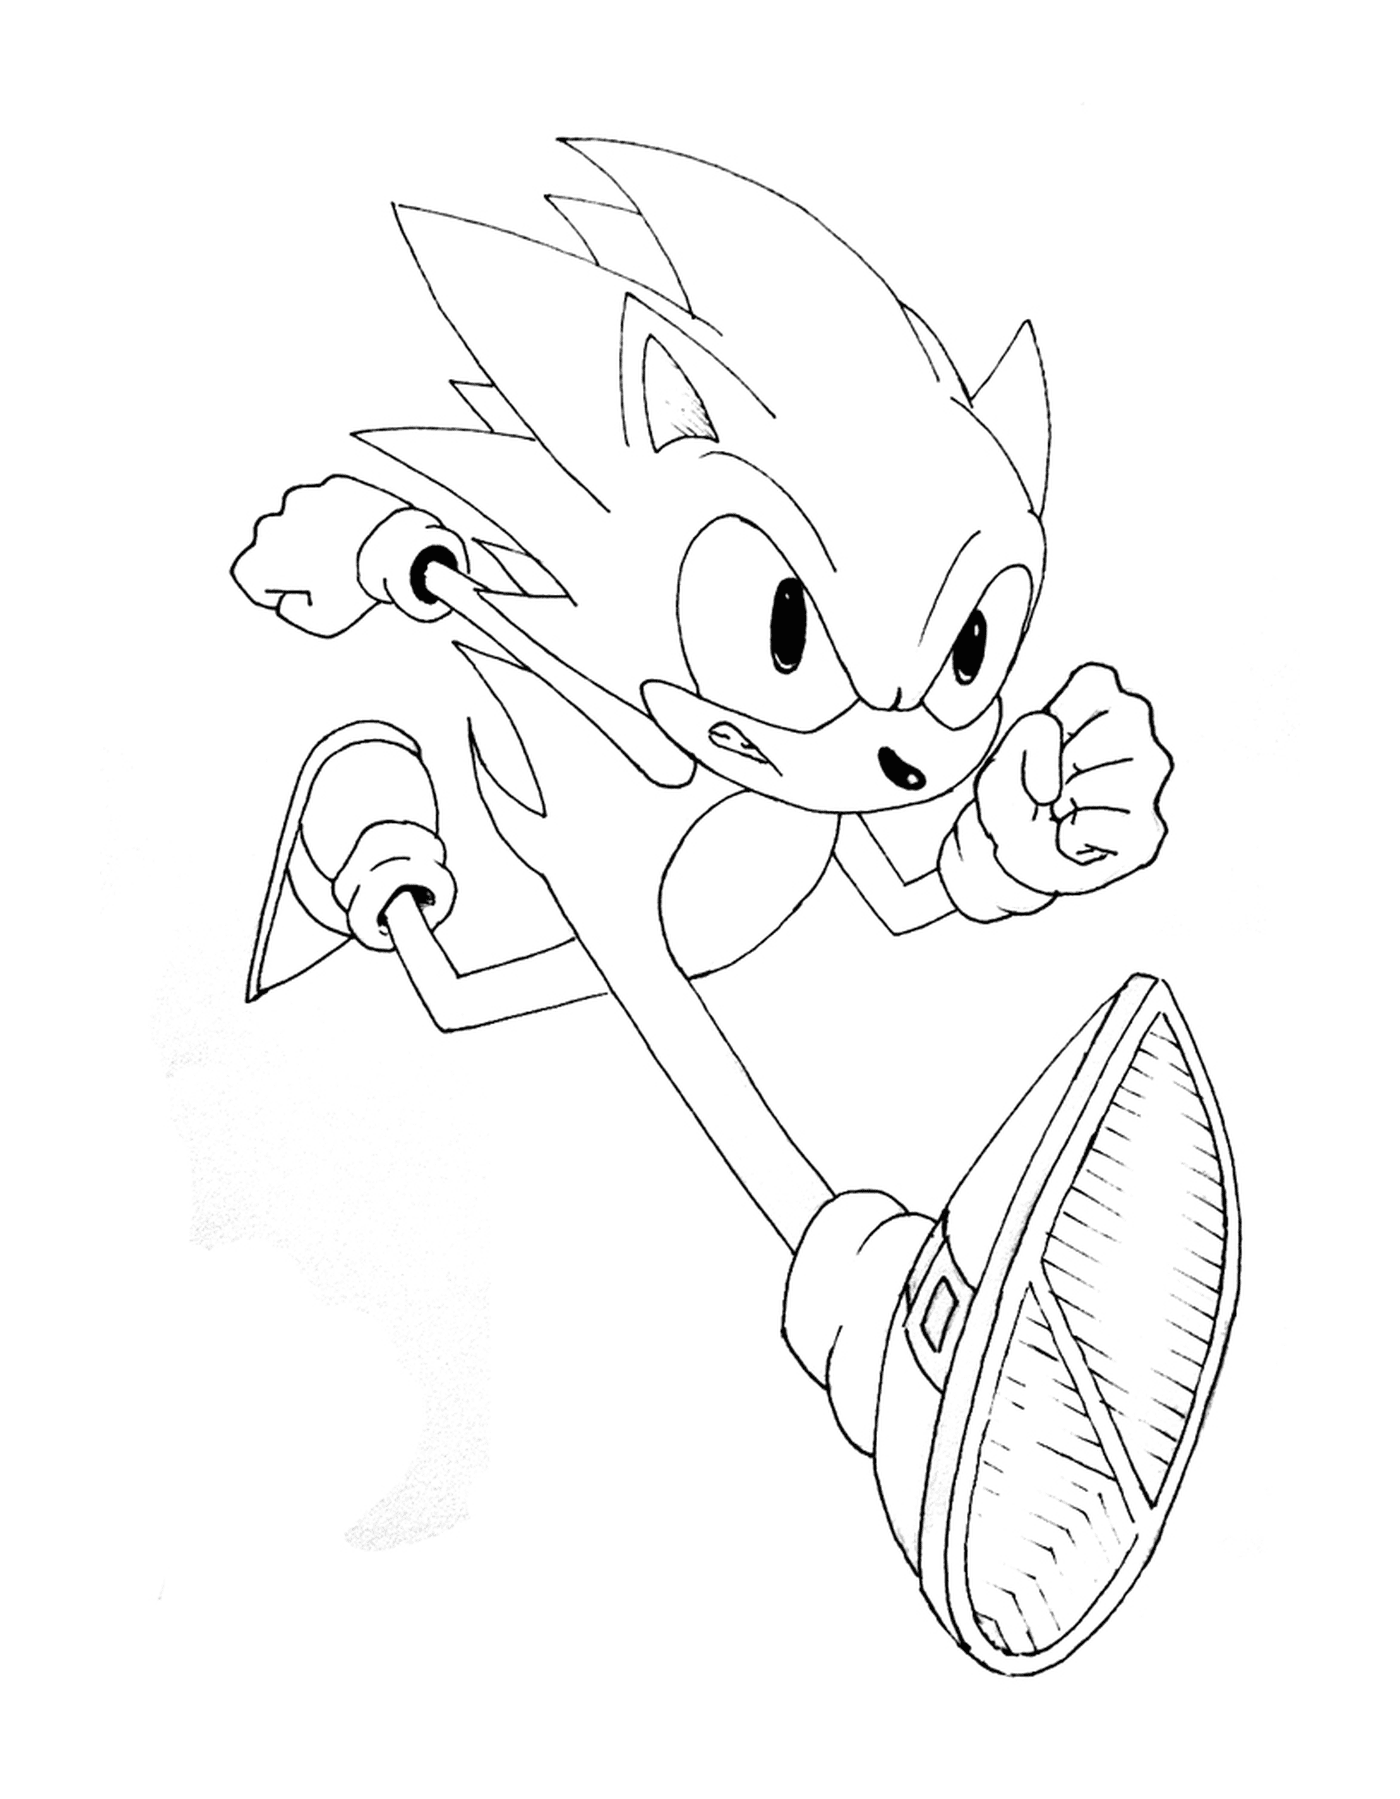  Schnelle und dynamische Sonic 